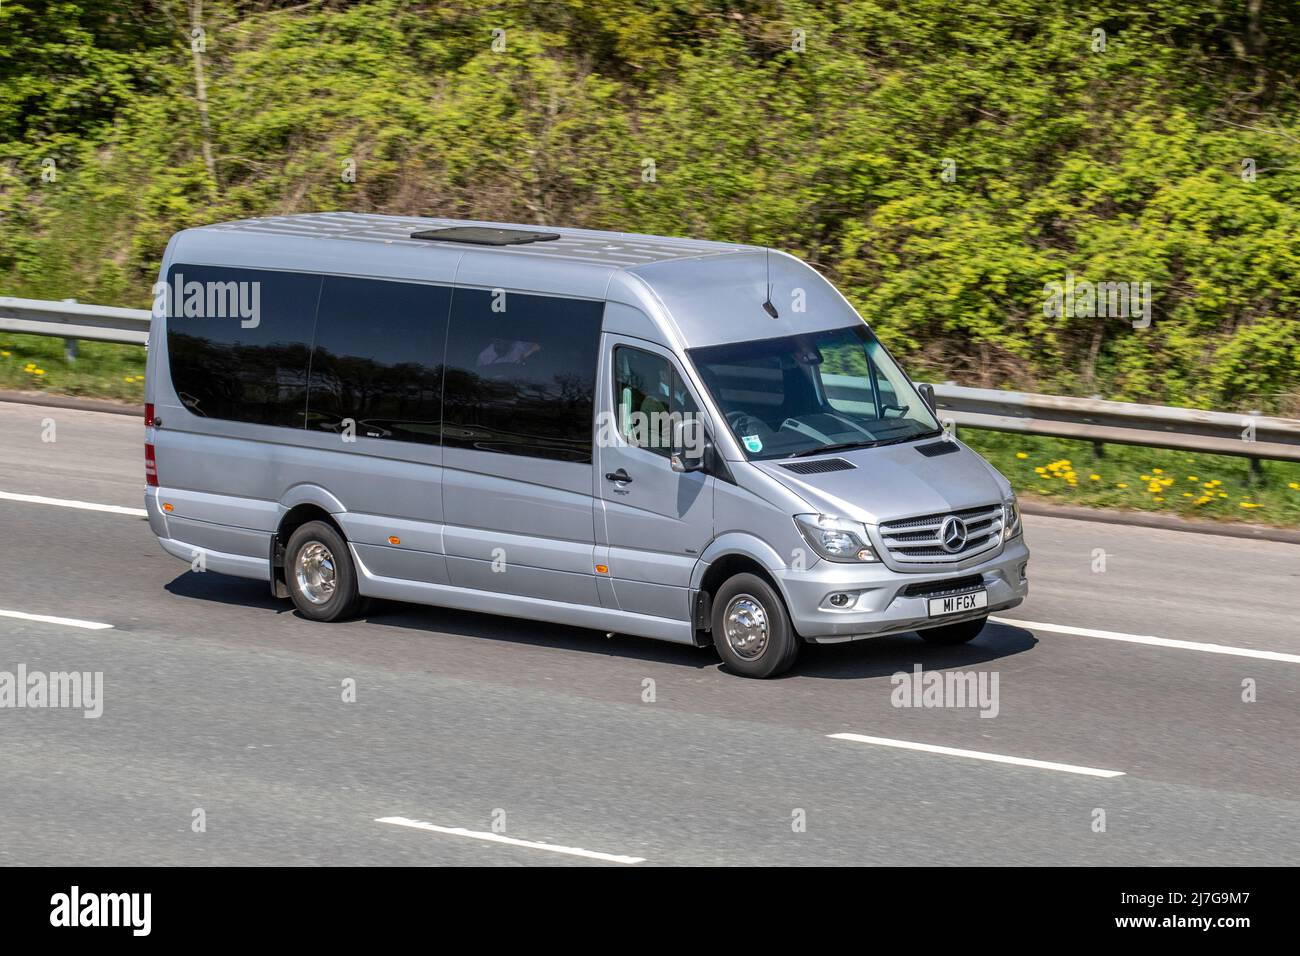 2018 argent Mercedes Benz Sprinter S16 CDI 2143 cc voyage exécutif, location de bus urbain, minibus de luxe 16 places minibus, voyager sur l'autoroute M61, Royaume-Uni Banque D'Images